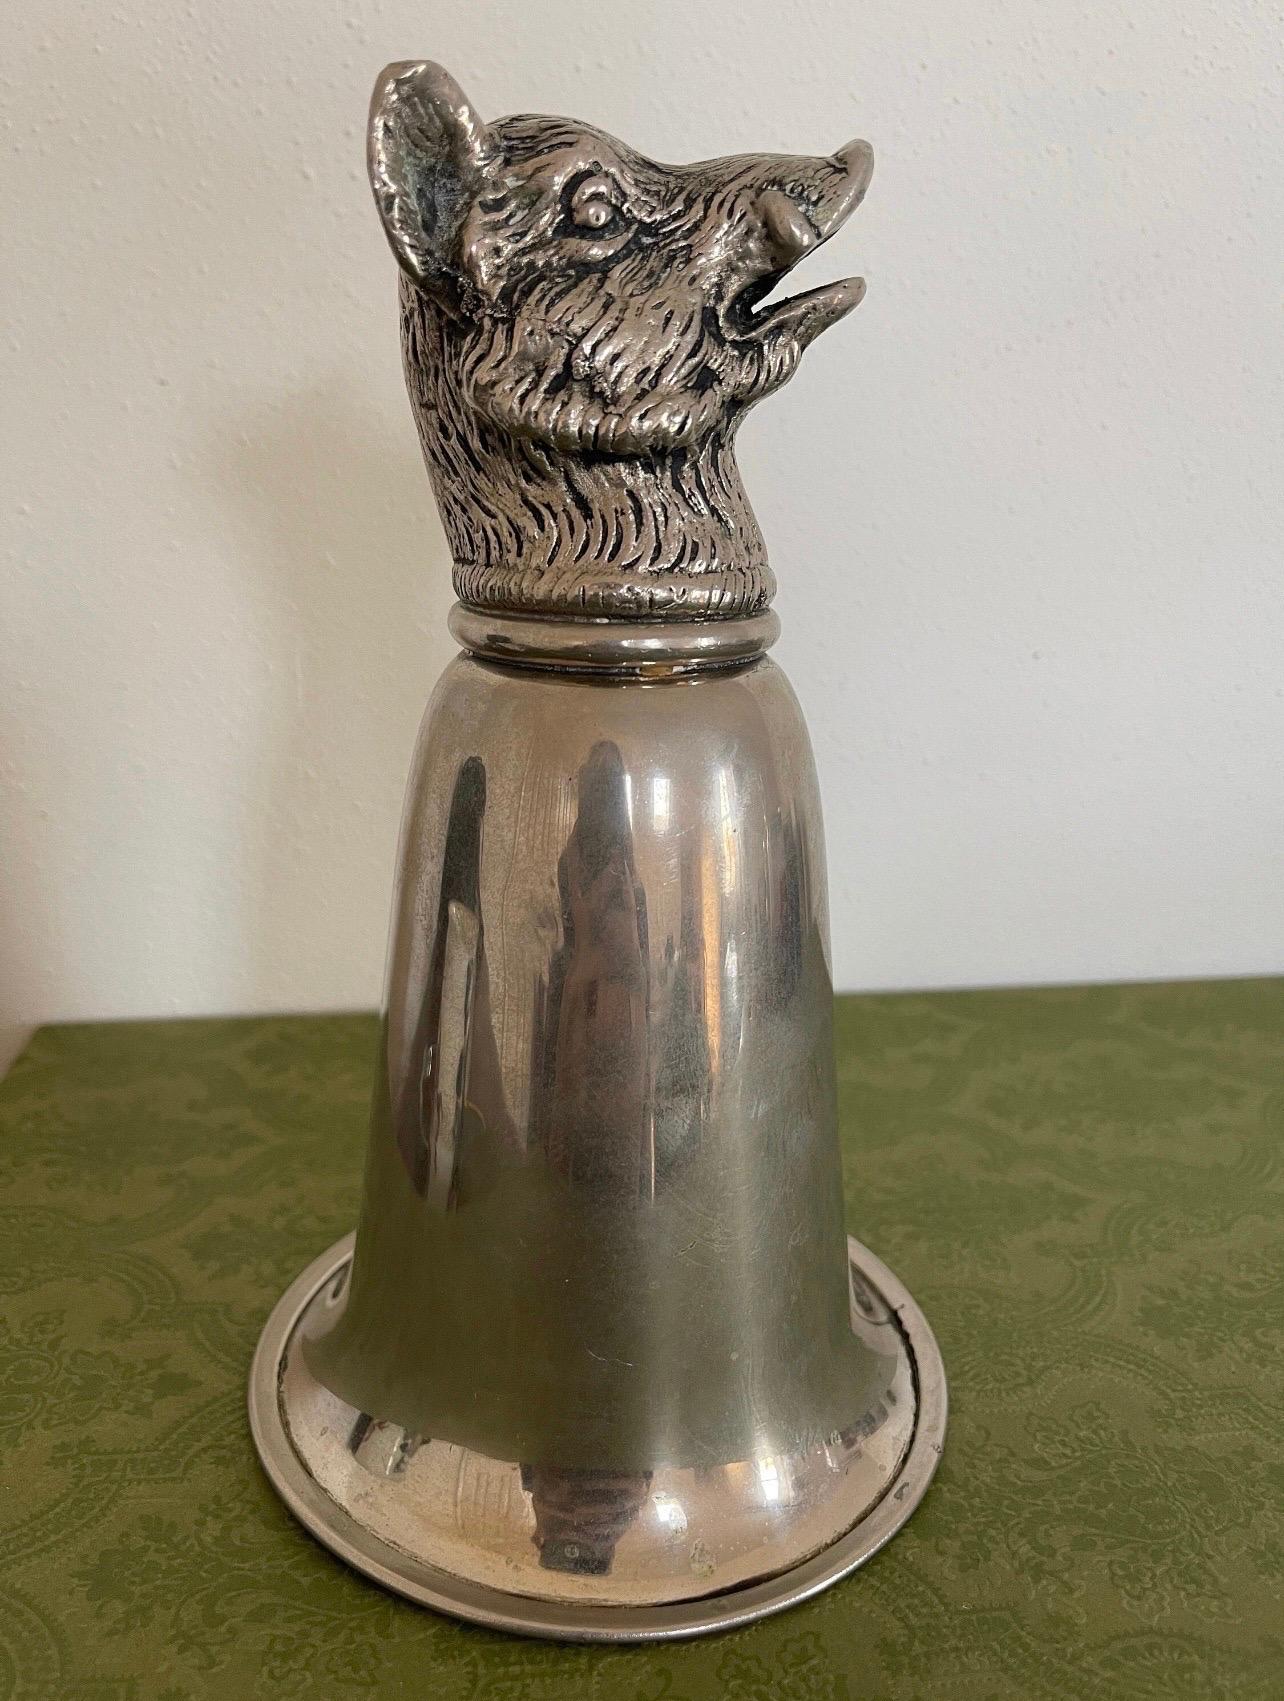 🖤 Sammlertraum 🖤

Authentic Vintage Gucci Wildschweinkopf Silber Steigbügel Cup. CIRCA 1970 ist diese wunderschöne Tasse aus Zinn und Messing mit einem skulptierten Wildschwein gefertigt. Ein sehr cooles und auffälliges Stück für Ihre Bar,